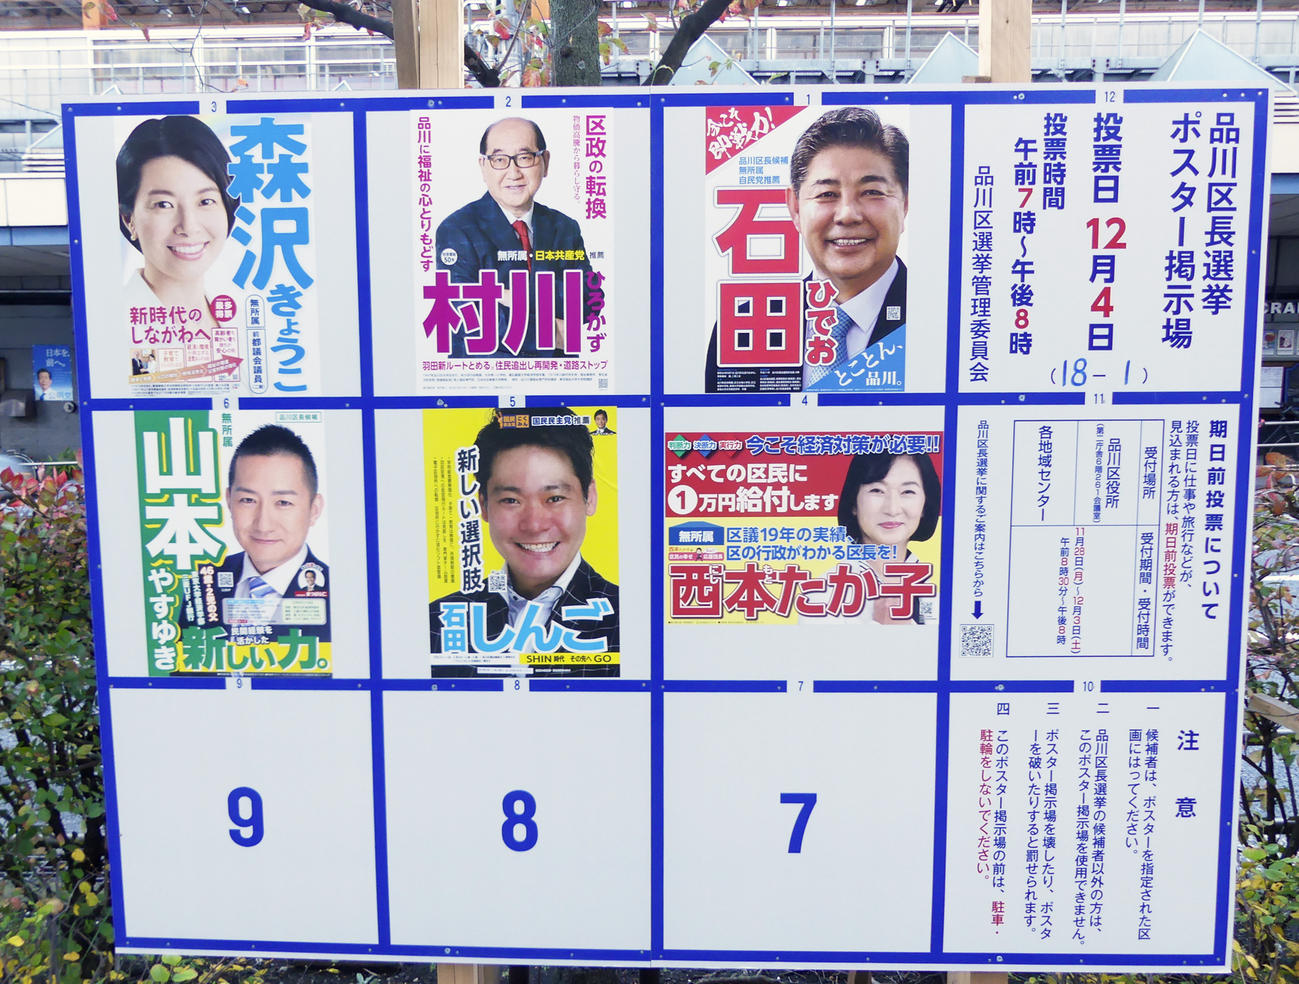 品川区長選に立候補した6人のポスターがはられた掲示板